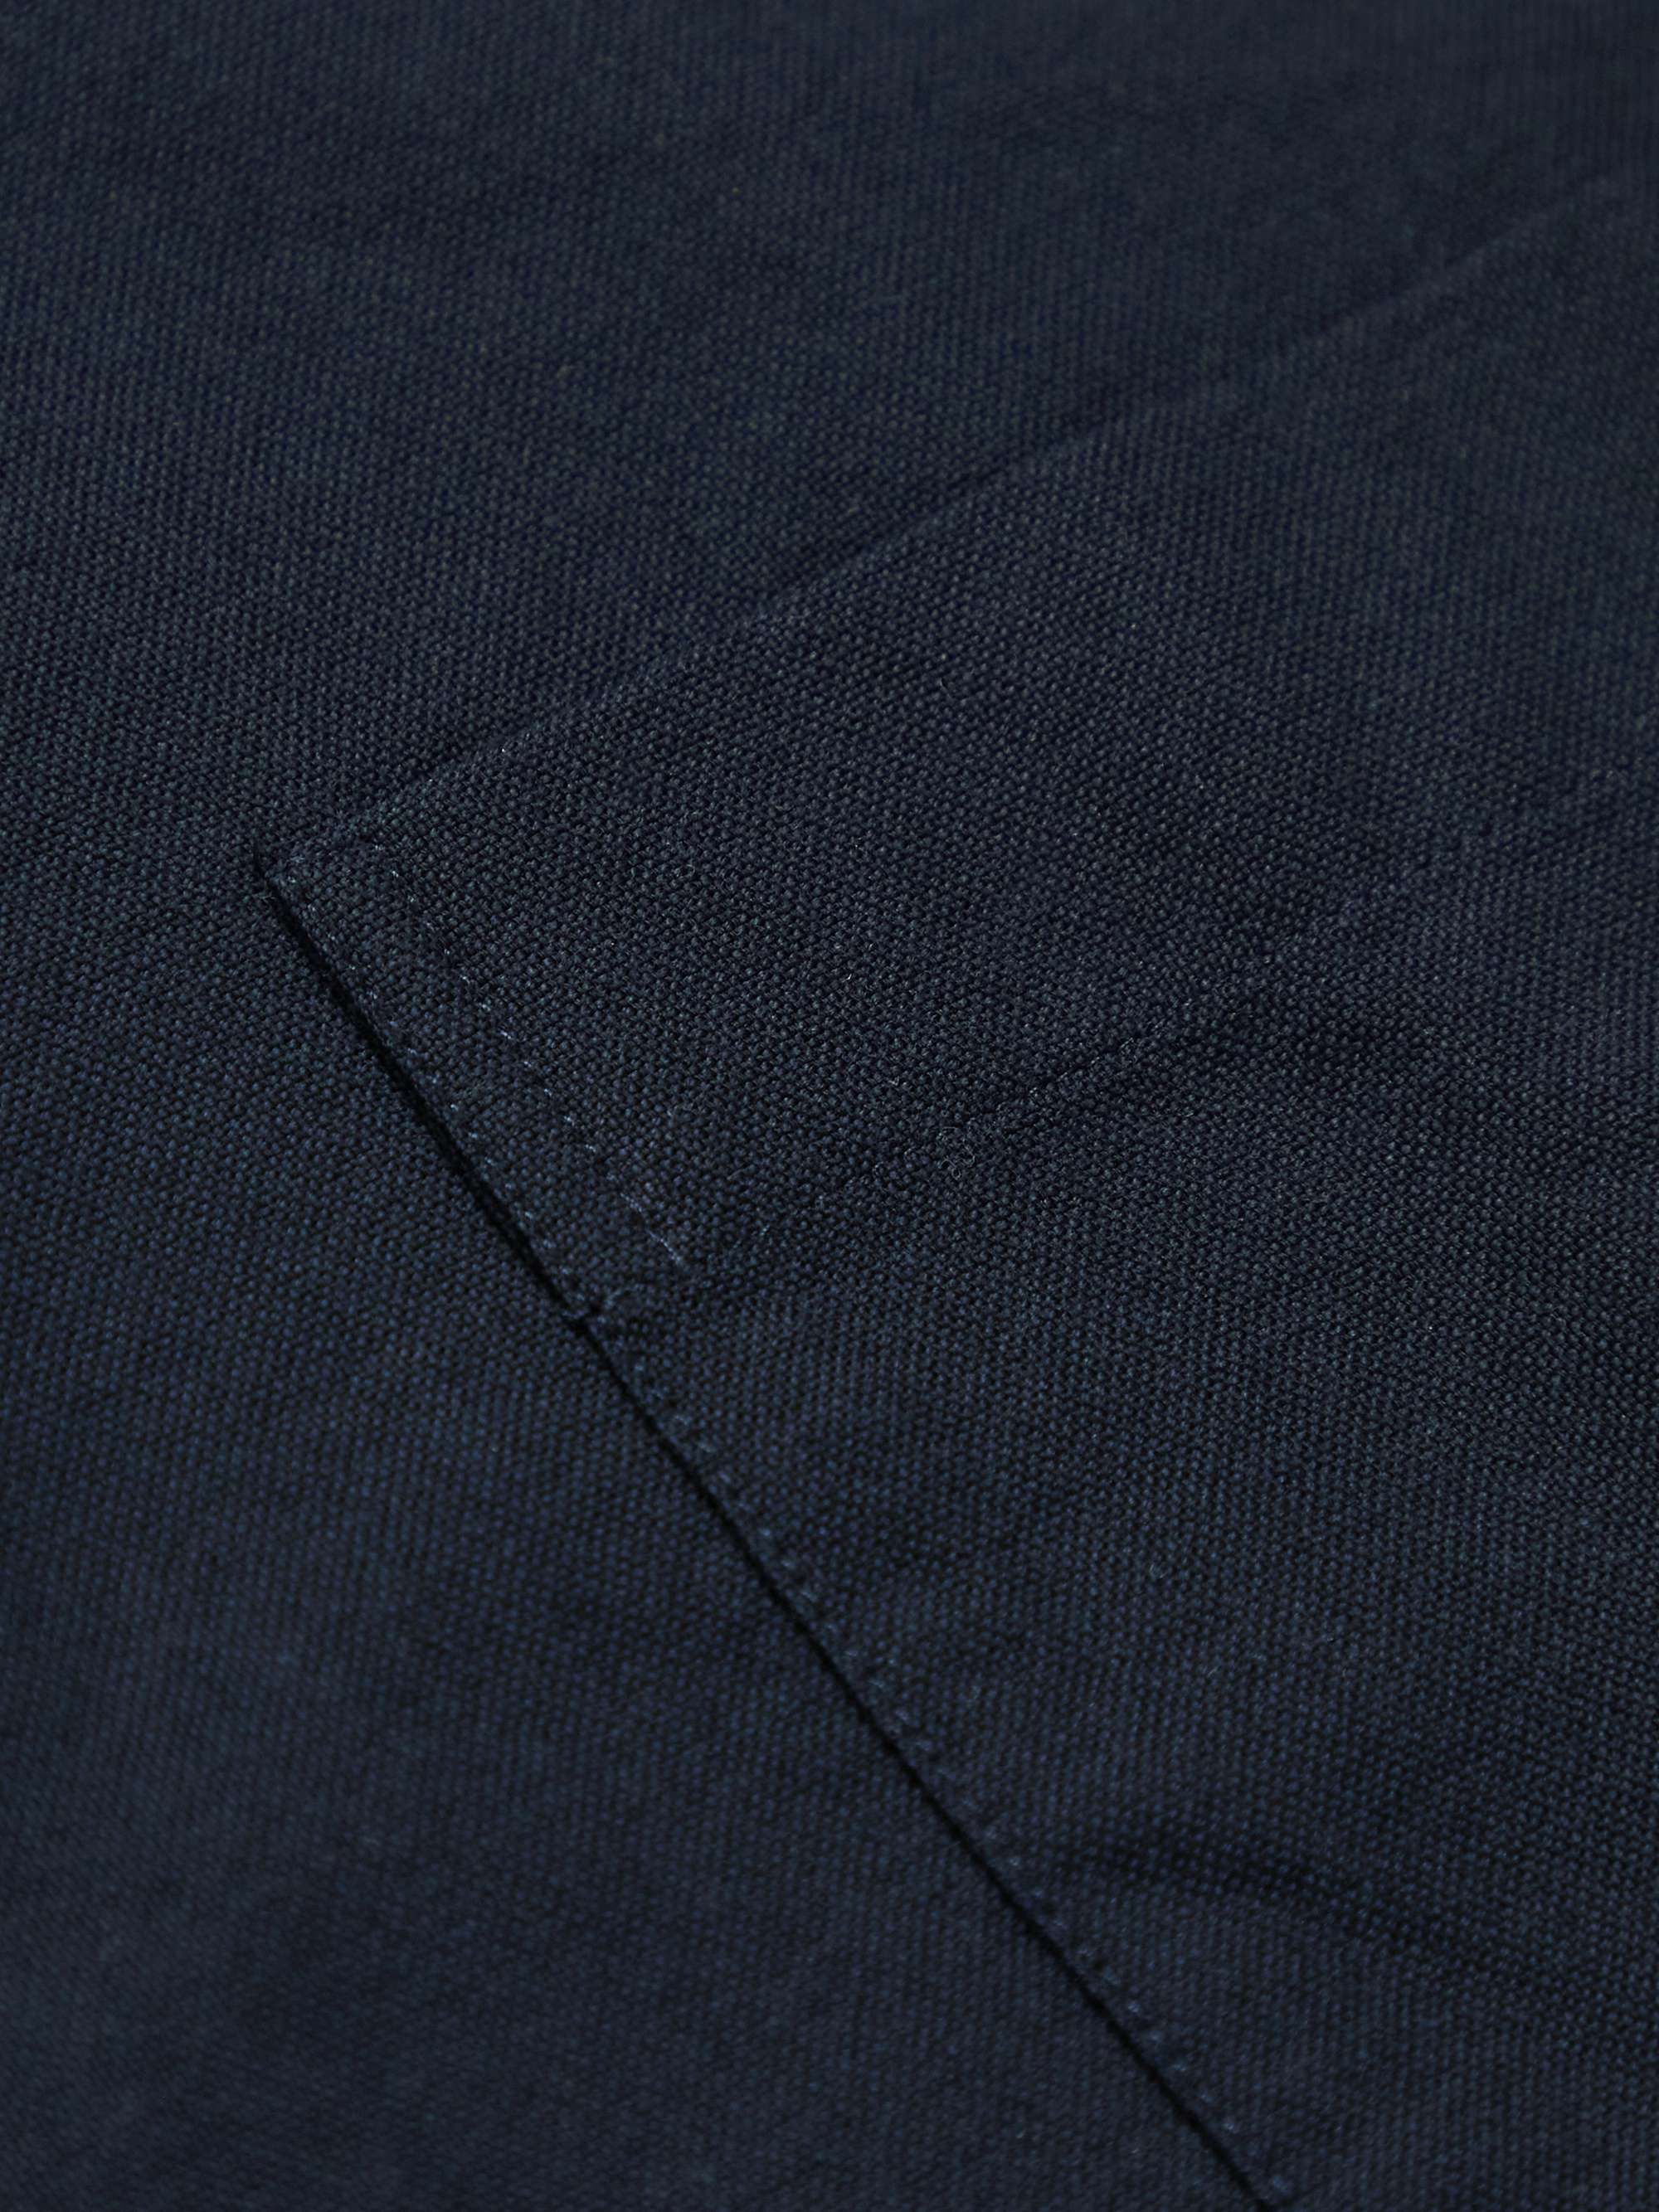 LA PAZ Silveira Convertible-Collar Cotton Oxford Shirt